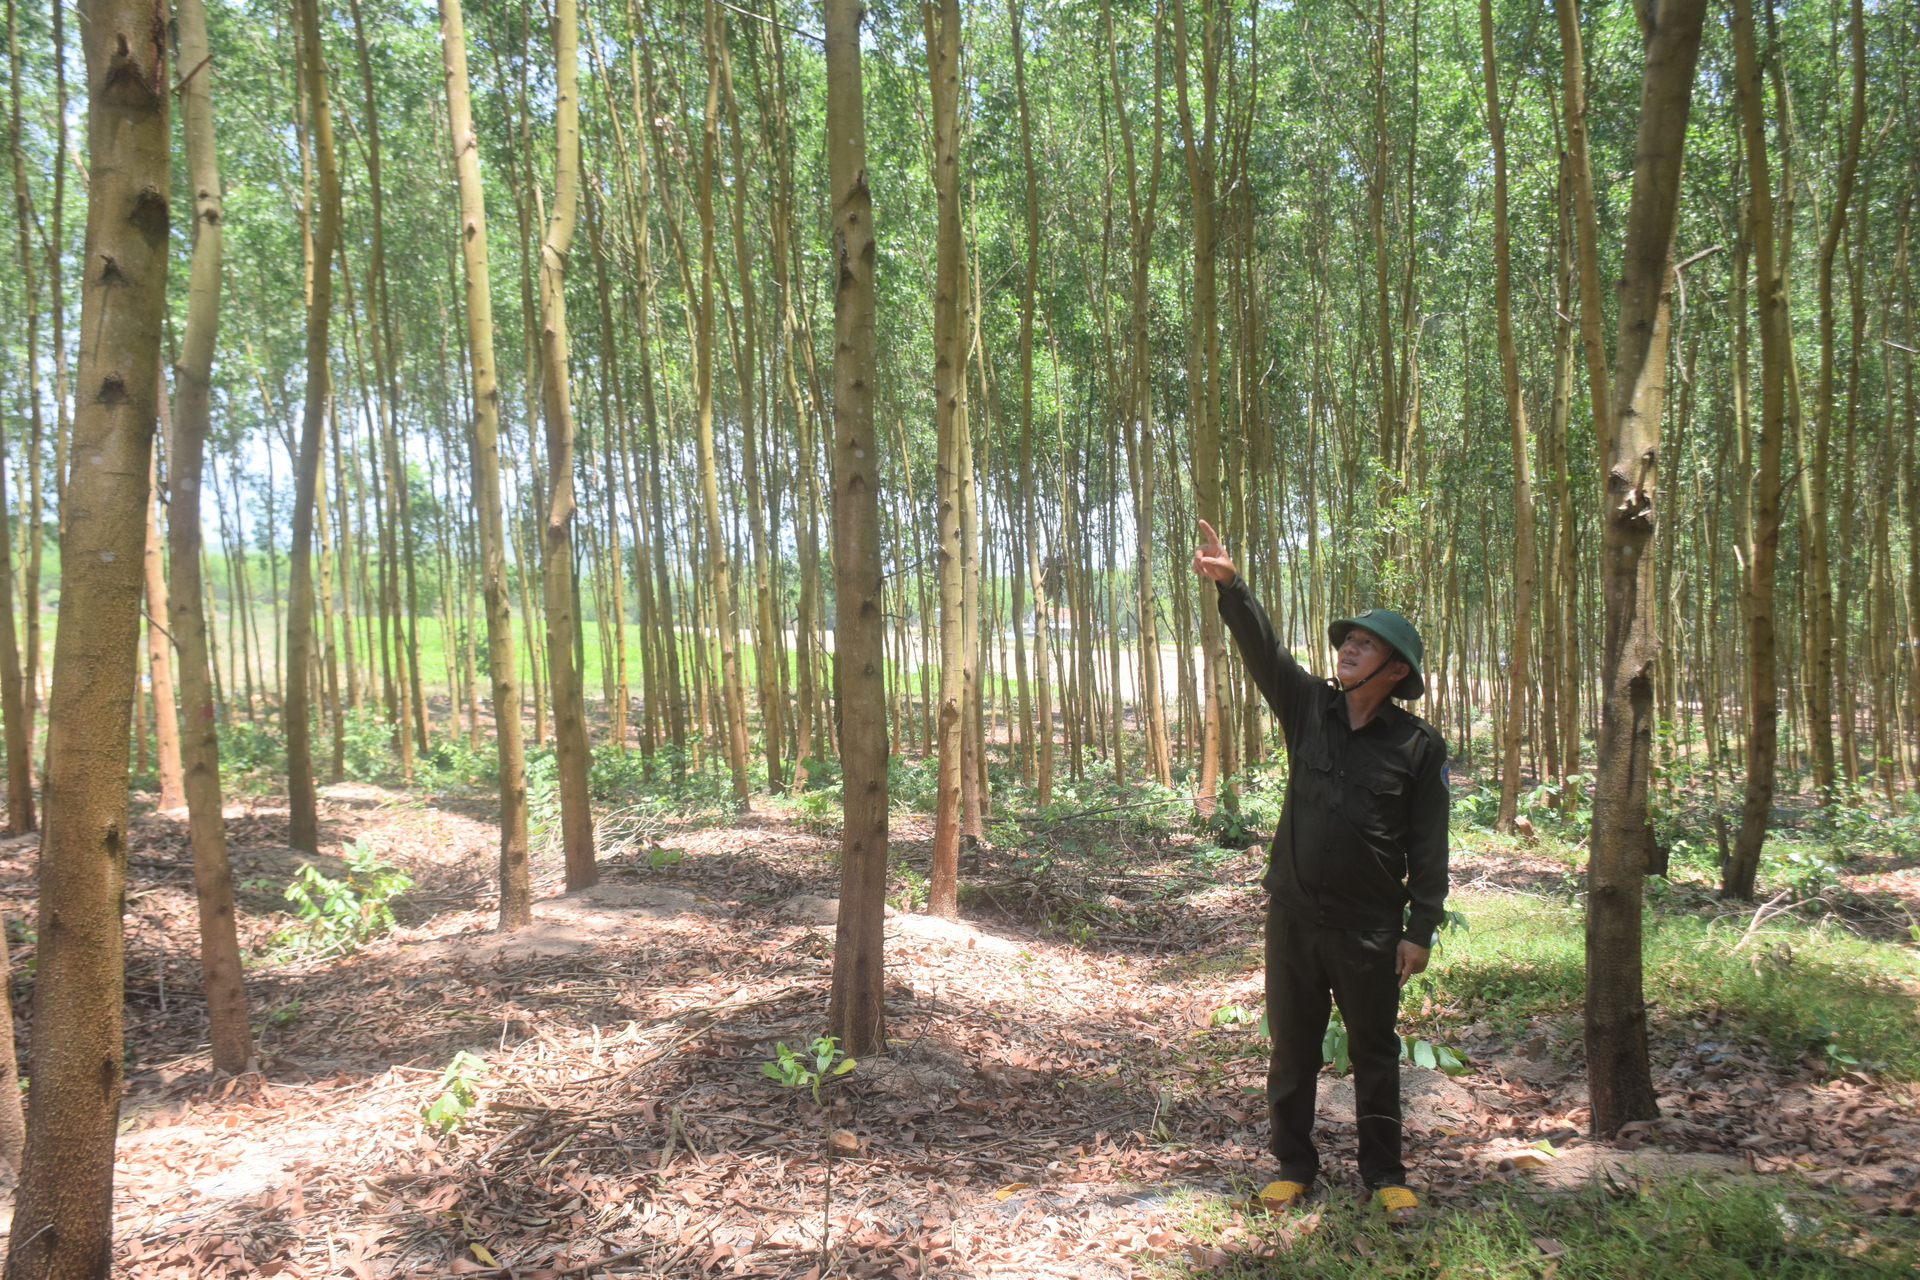 Bình Định phấn đấu đến năm 2030 trên địa bàn sẽ có 30.000ha rừng gỗ lớn. Ảnh: V.Đ.T.